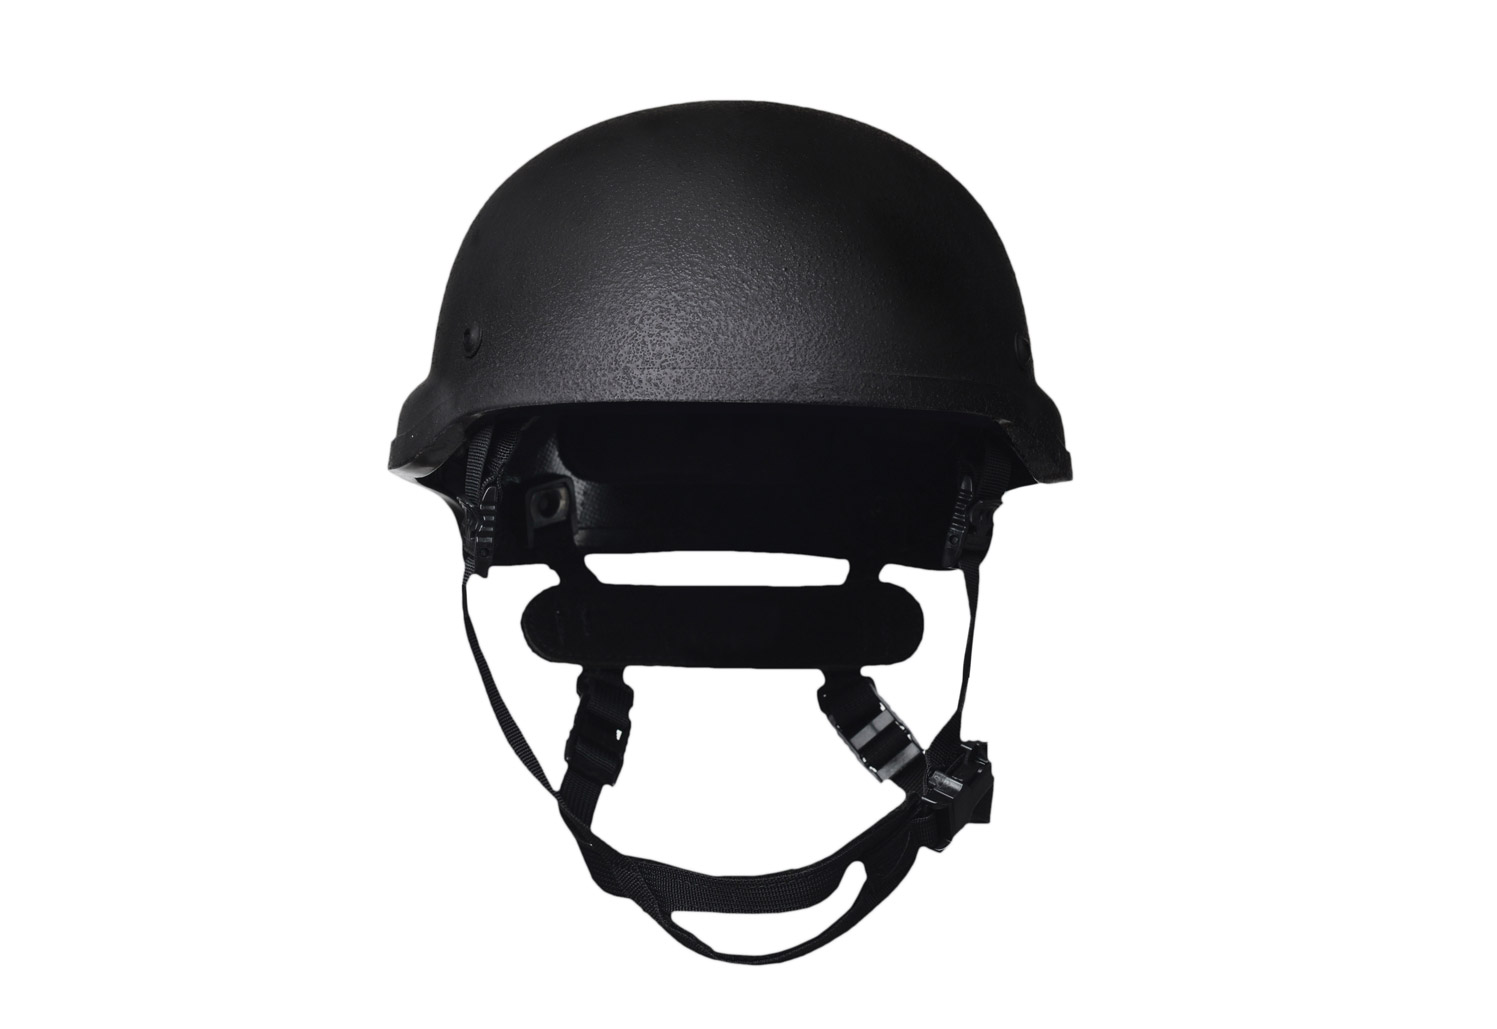 helmet-mid-cut-front